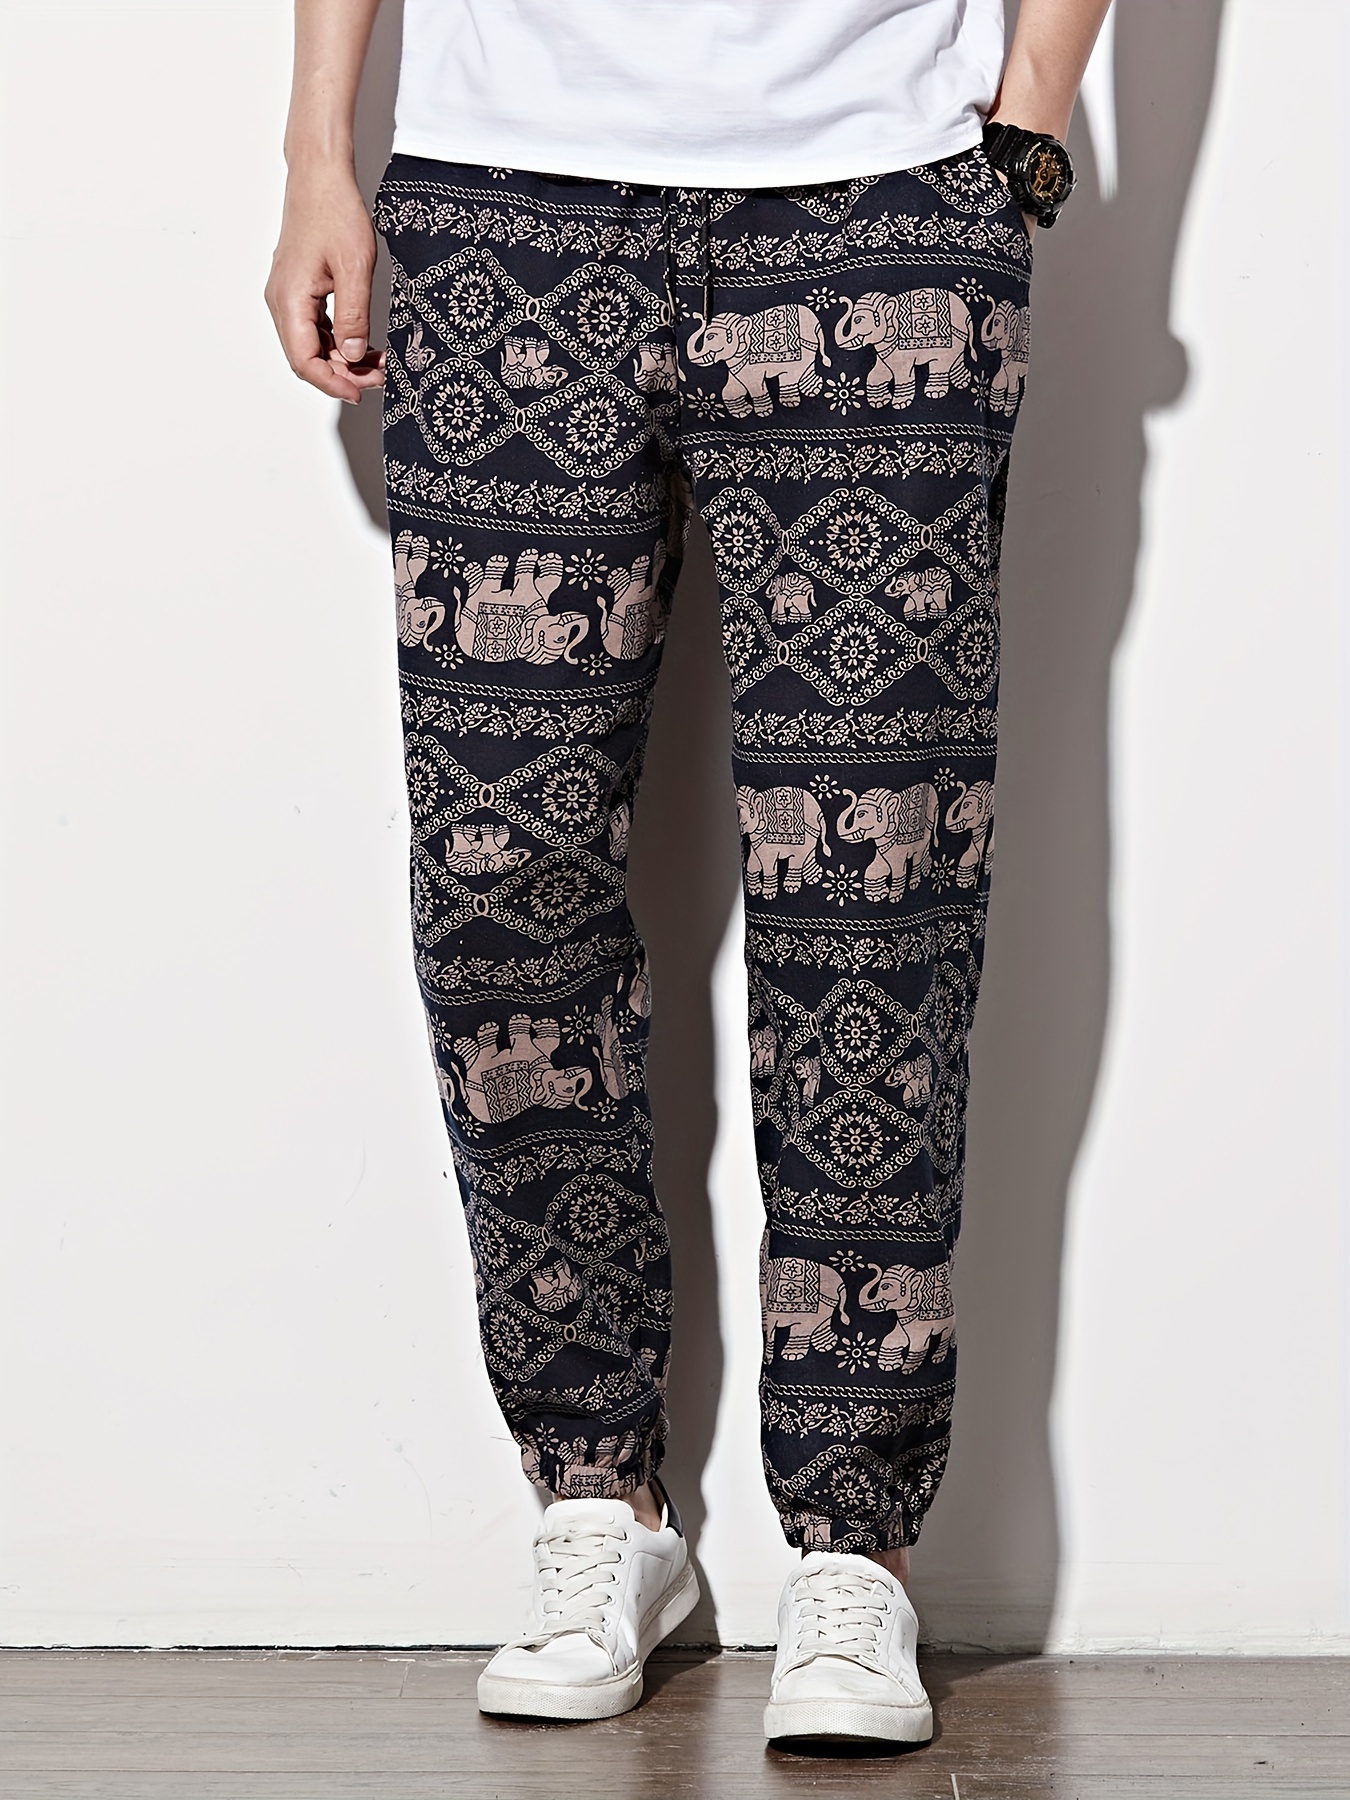 Comprar Ropa Elepants Nueva Colección. Pantalones Elephant Hombre y M